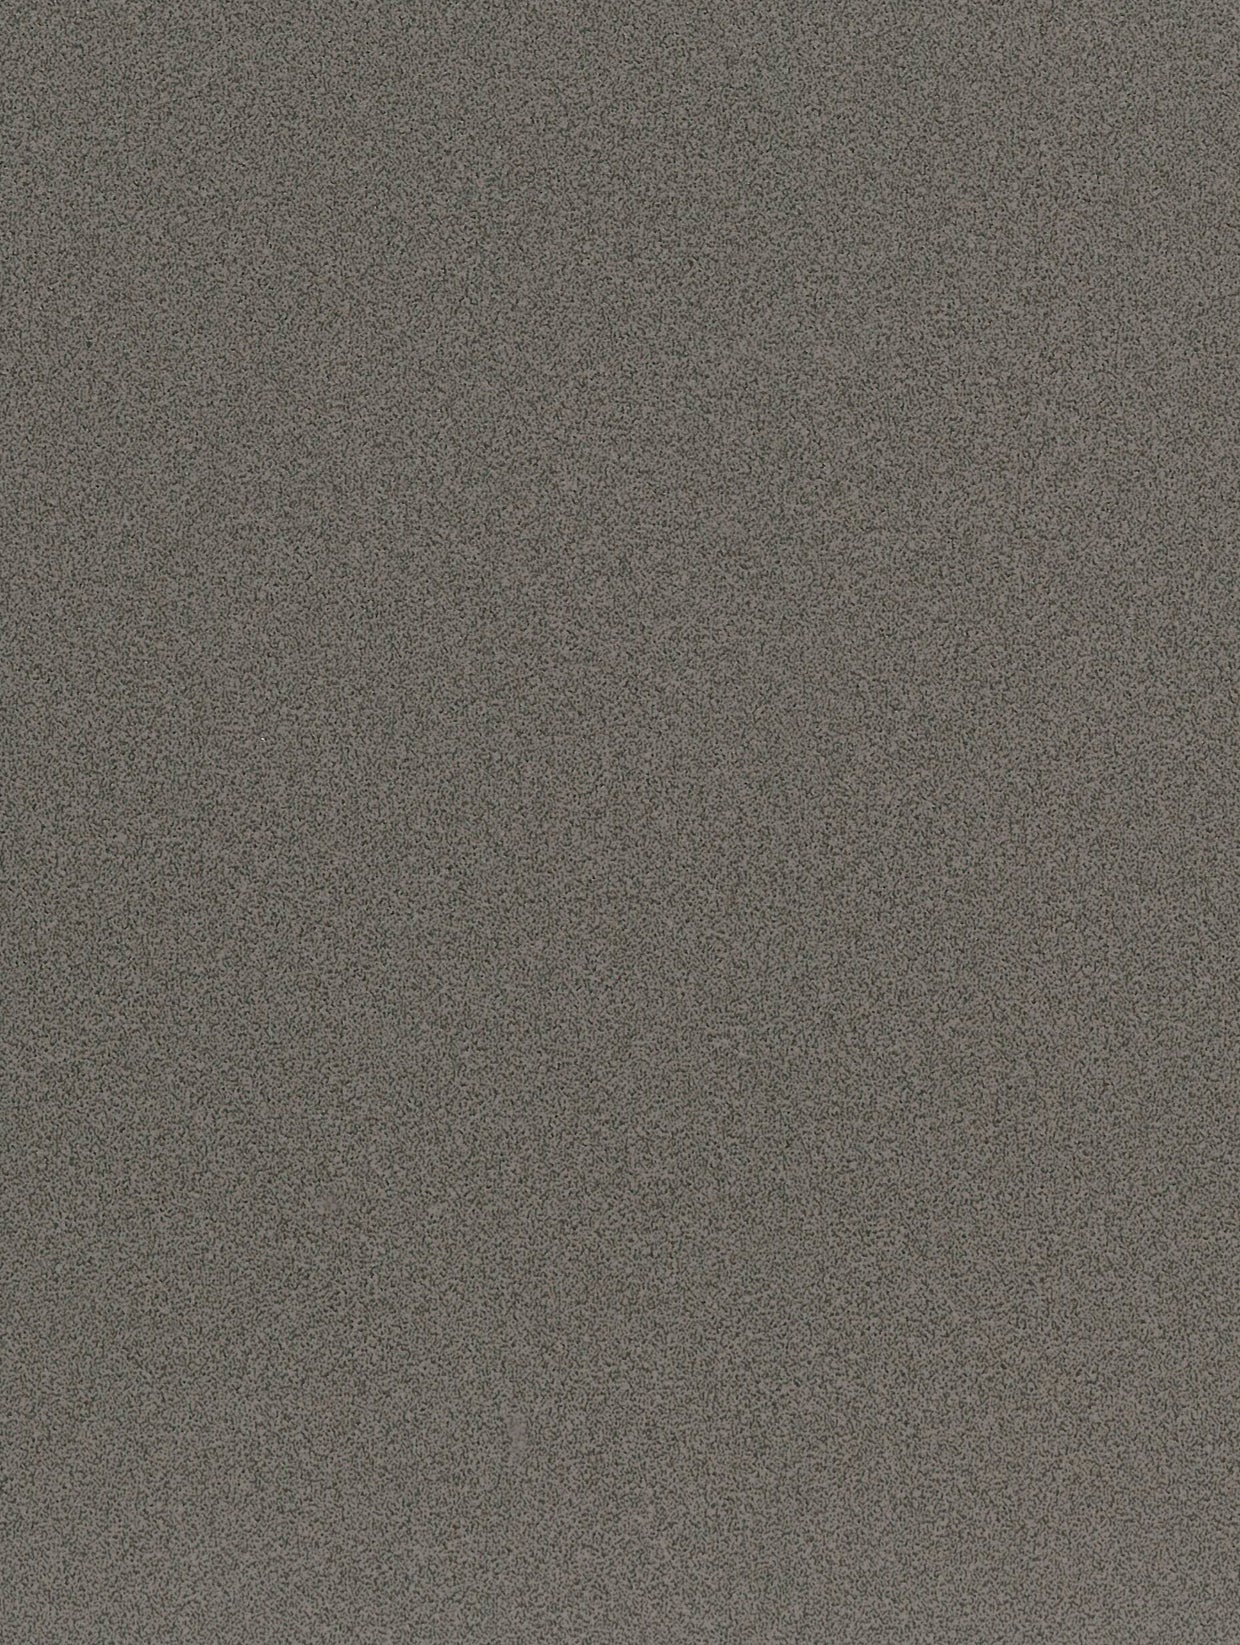 Stone-Volcanic | Natursteindekor Vulkanisch -  Möbelfolie Selbstklebende Tapete Vinyl Folie für Möbel Wand Regal (100x122cm)